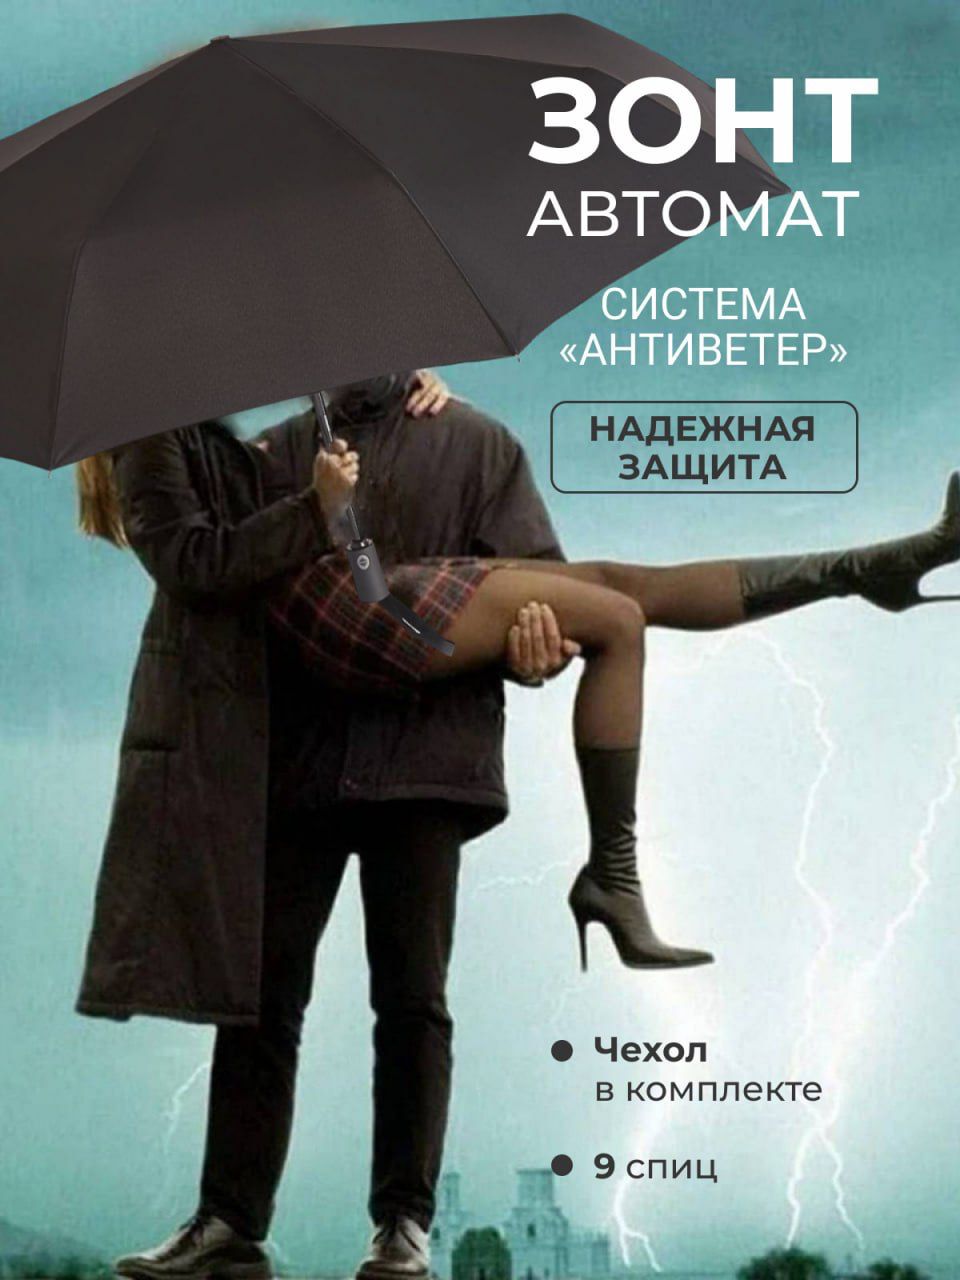 Он бесплатный. Мужчина и женщина под зонтом. Парень и девушка под зонтом. Мужчина под зонтом. Пара под зонтиком.